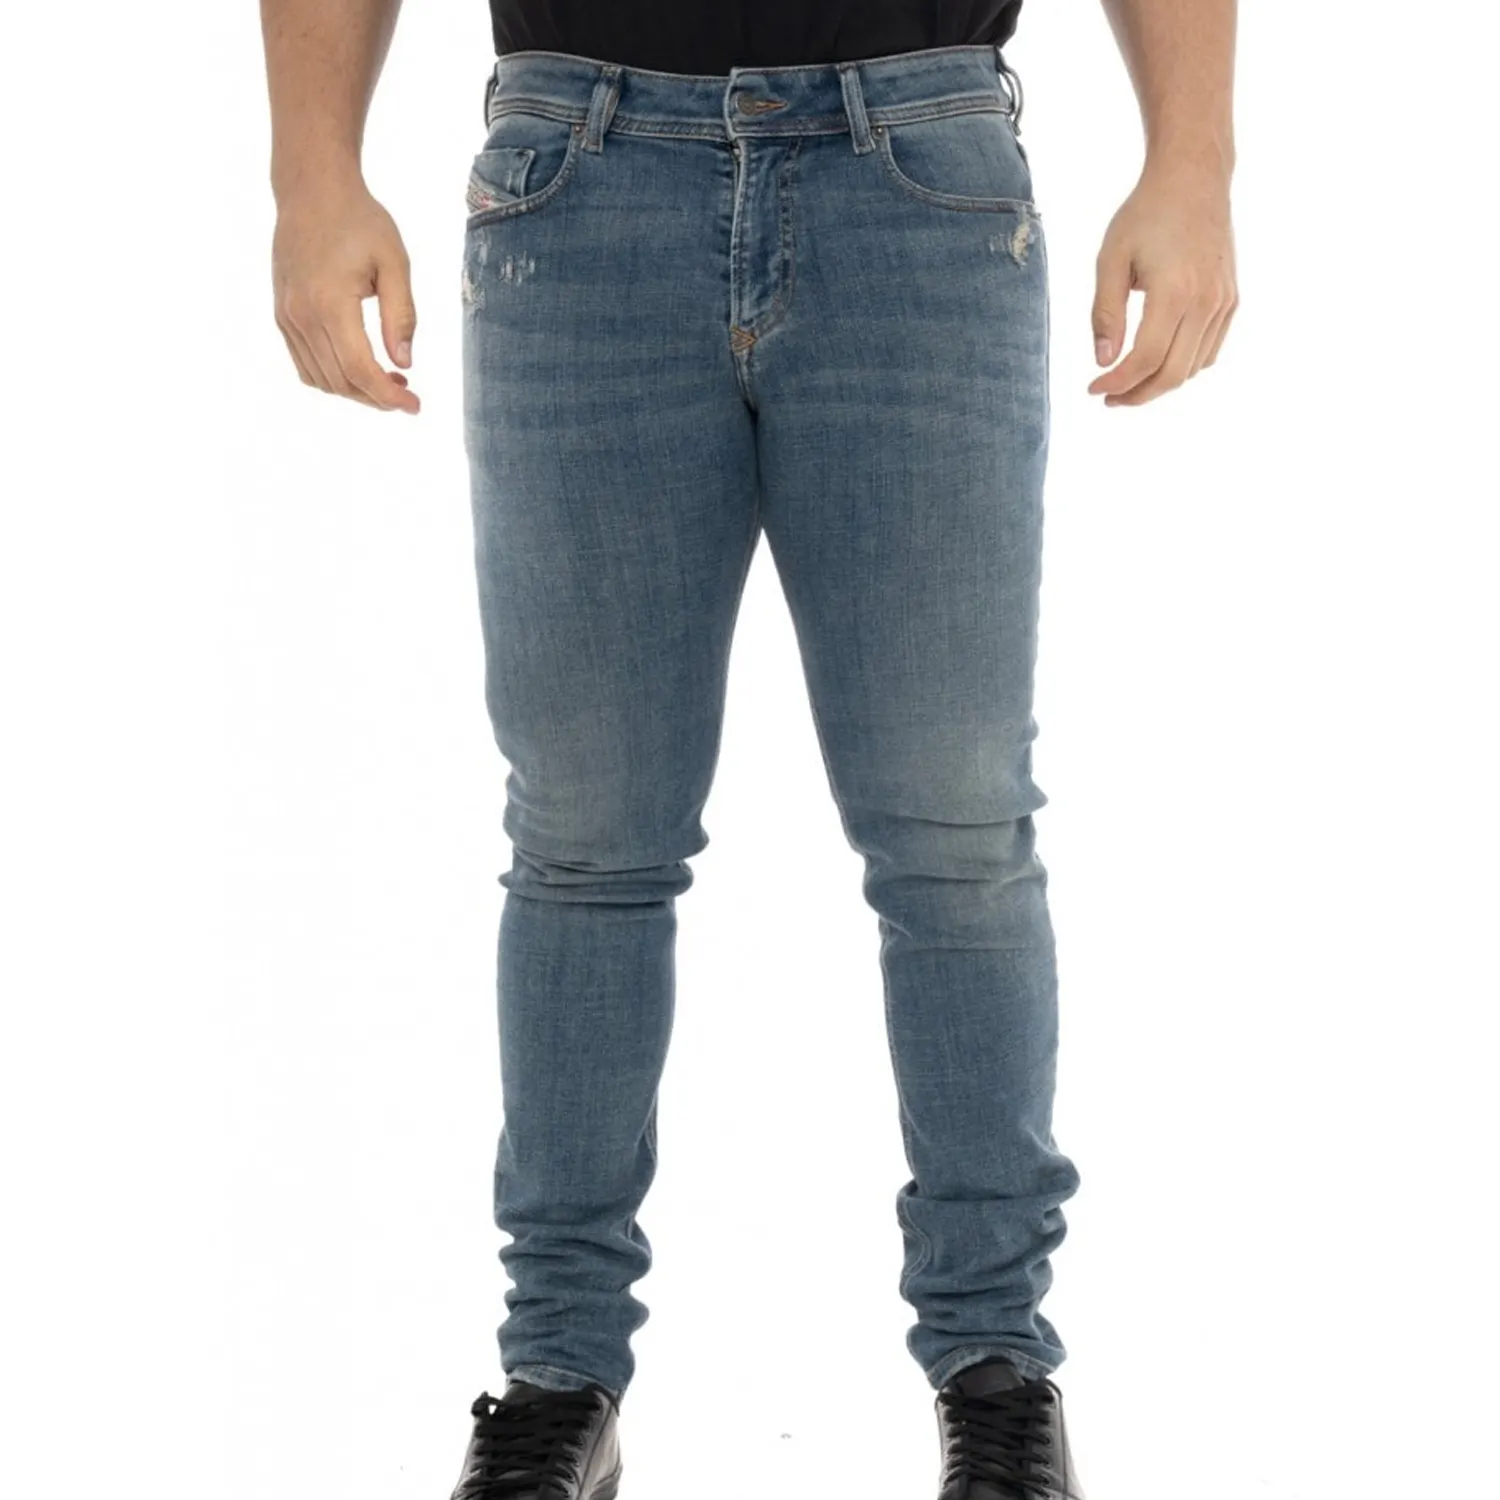 Celana Jeans Slim Fit trendi untuk pria kualitas ekspor 100% katun harga grosir jumlah kecil pemasok dari Bangladesh